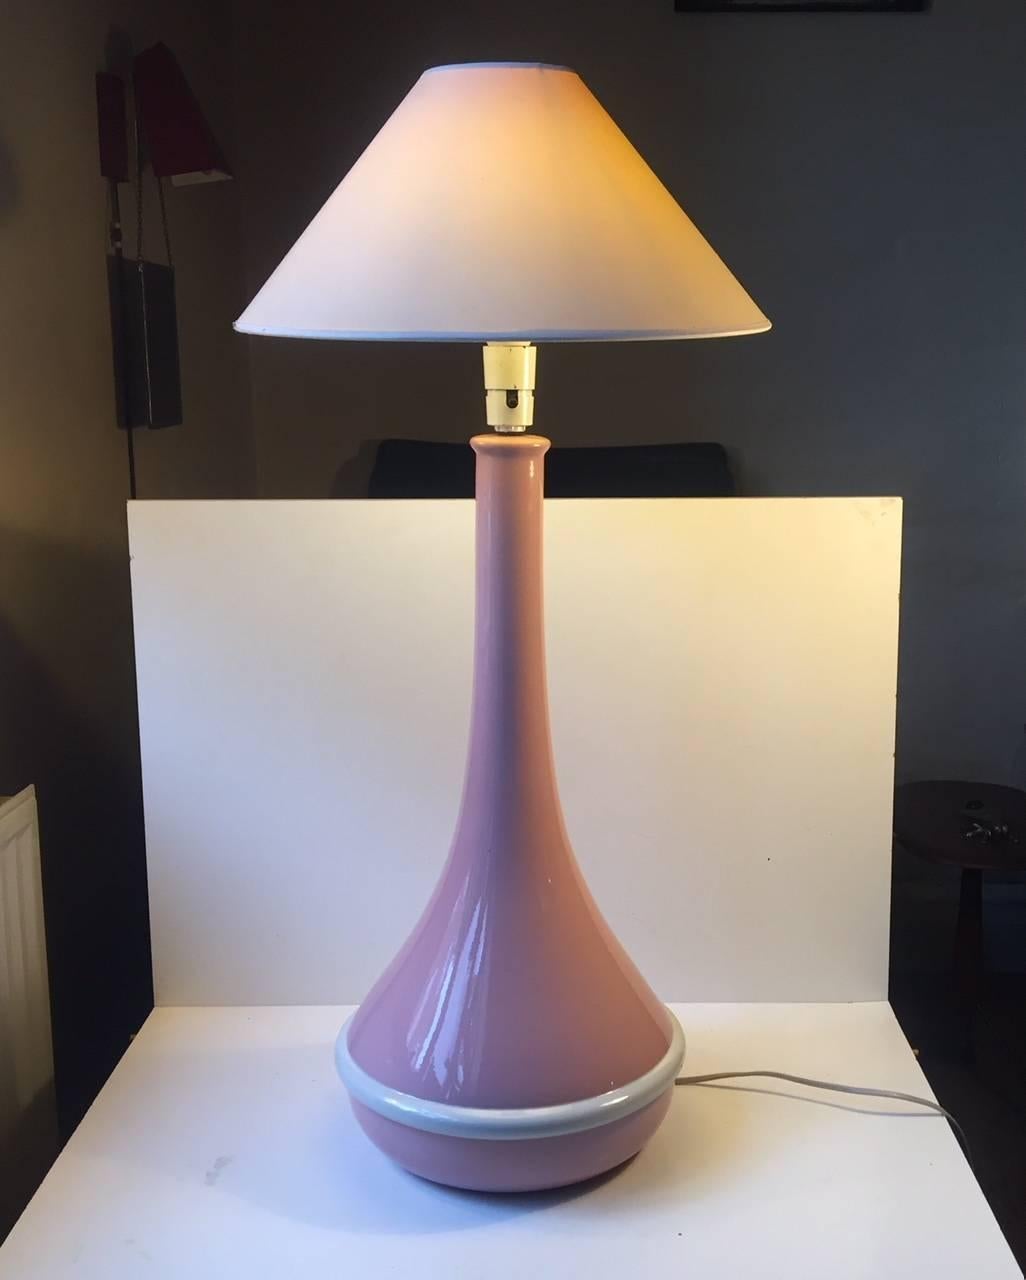 Très grande lampe de table en faïence entièrement vitrifiée. En plus du ruban blanc, il est rose - très rose. Il est doté d'un interrupteur marche/arrêt sur sa prise. Il a été fabriqué et conçu en interne par Royal Copenhagen au Danemark dans les